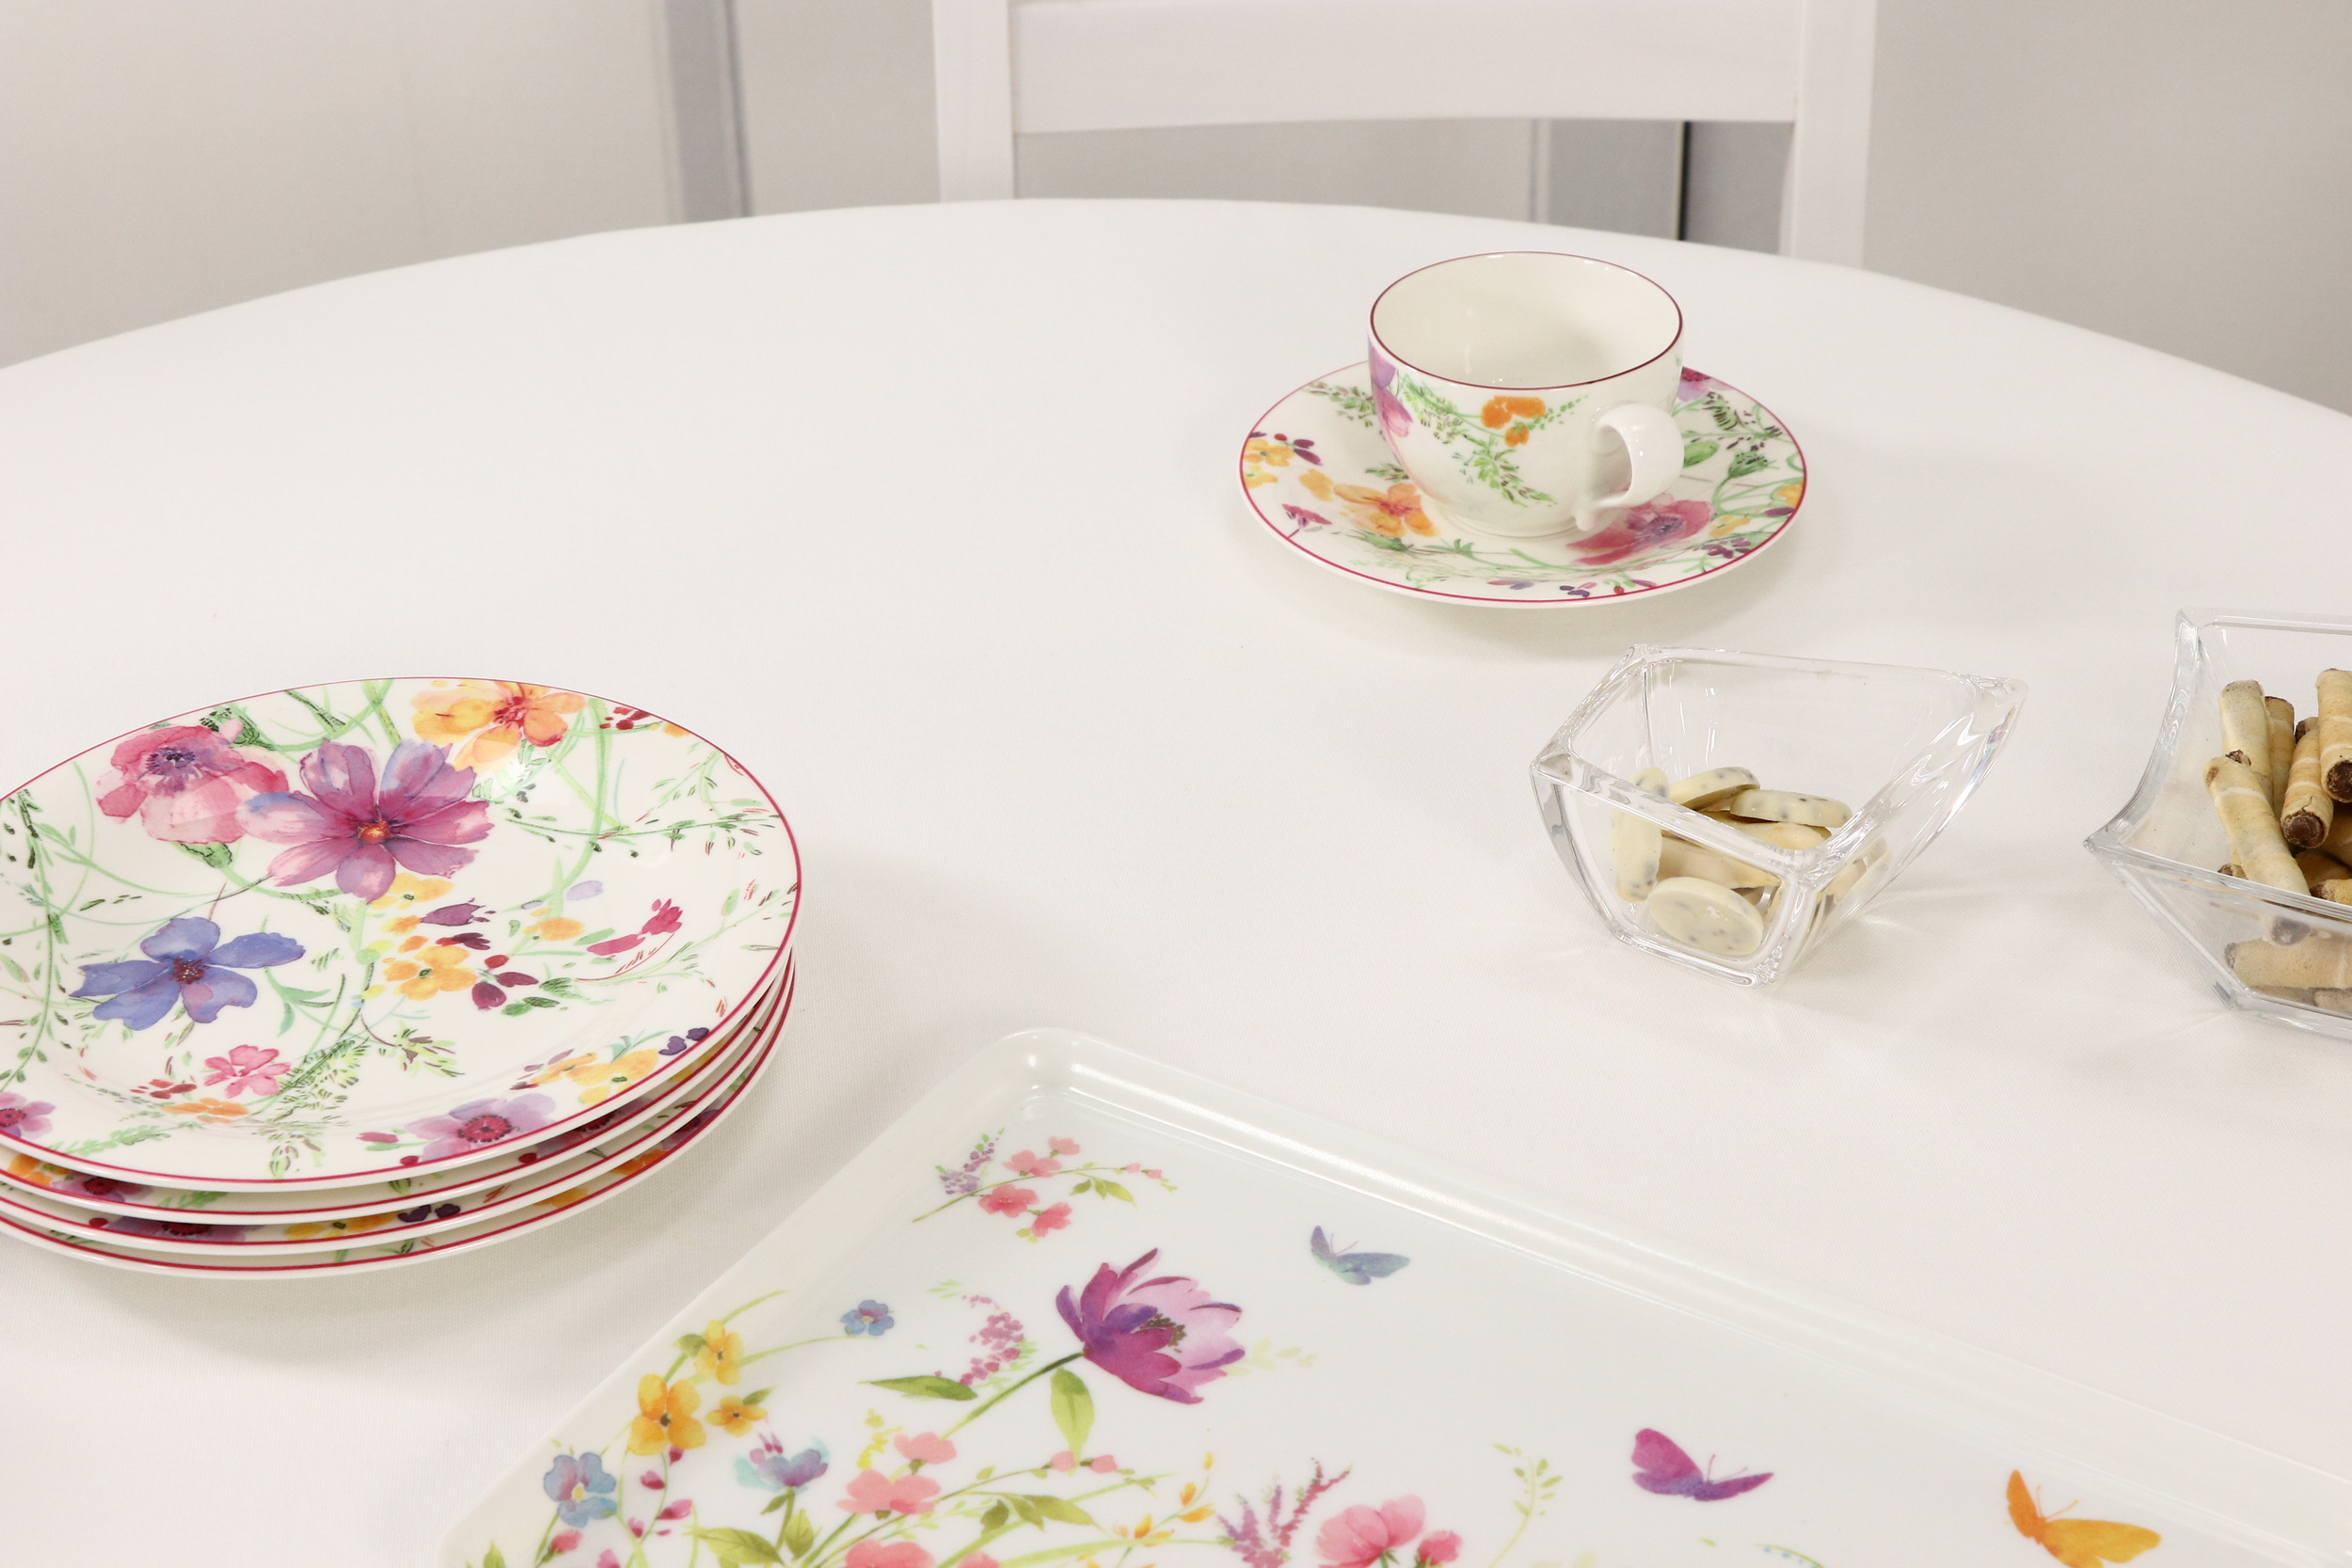 Tischdecke Creme Weiß: Besonders elegante und festliche Tischdecke |  TiDeko® Tischdecken-Shop.de. Tischdecken Markenqualität